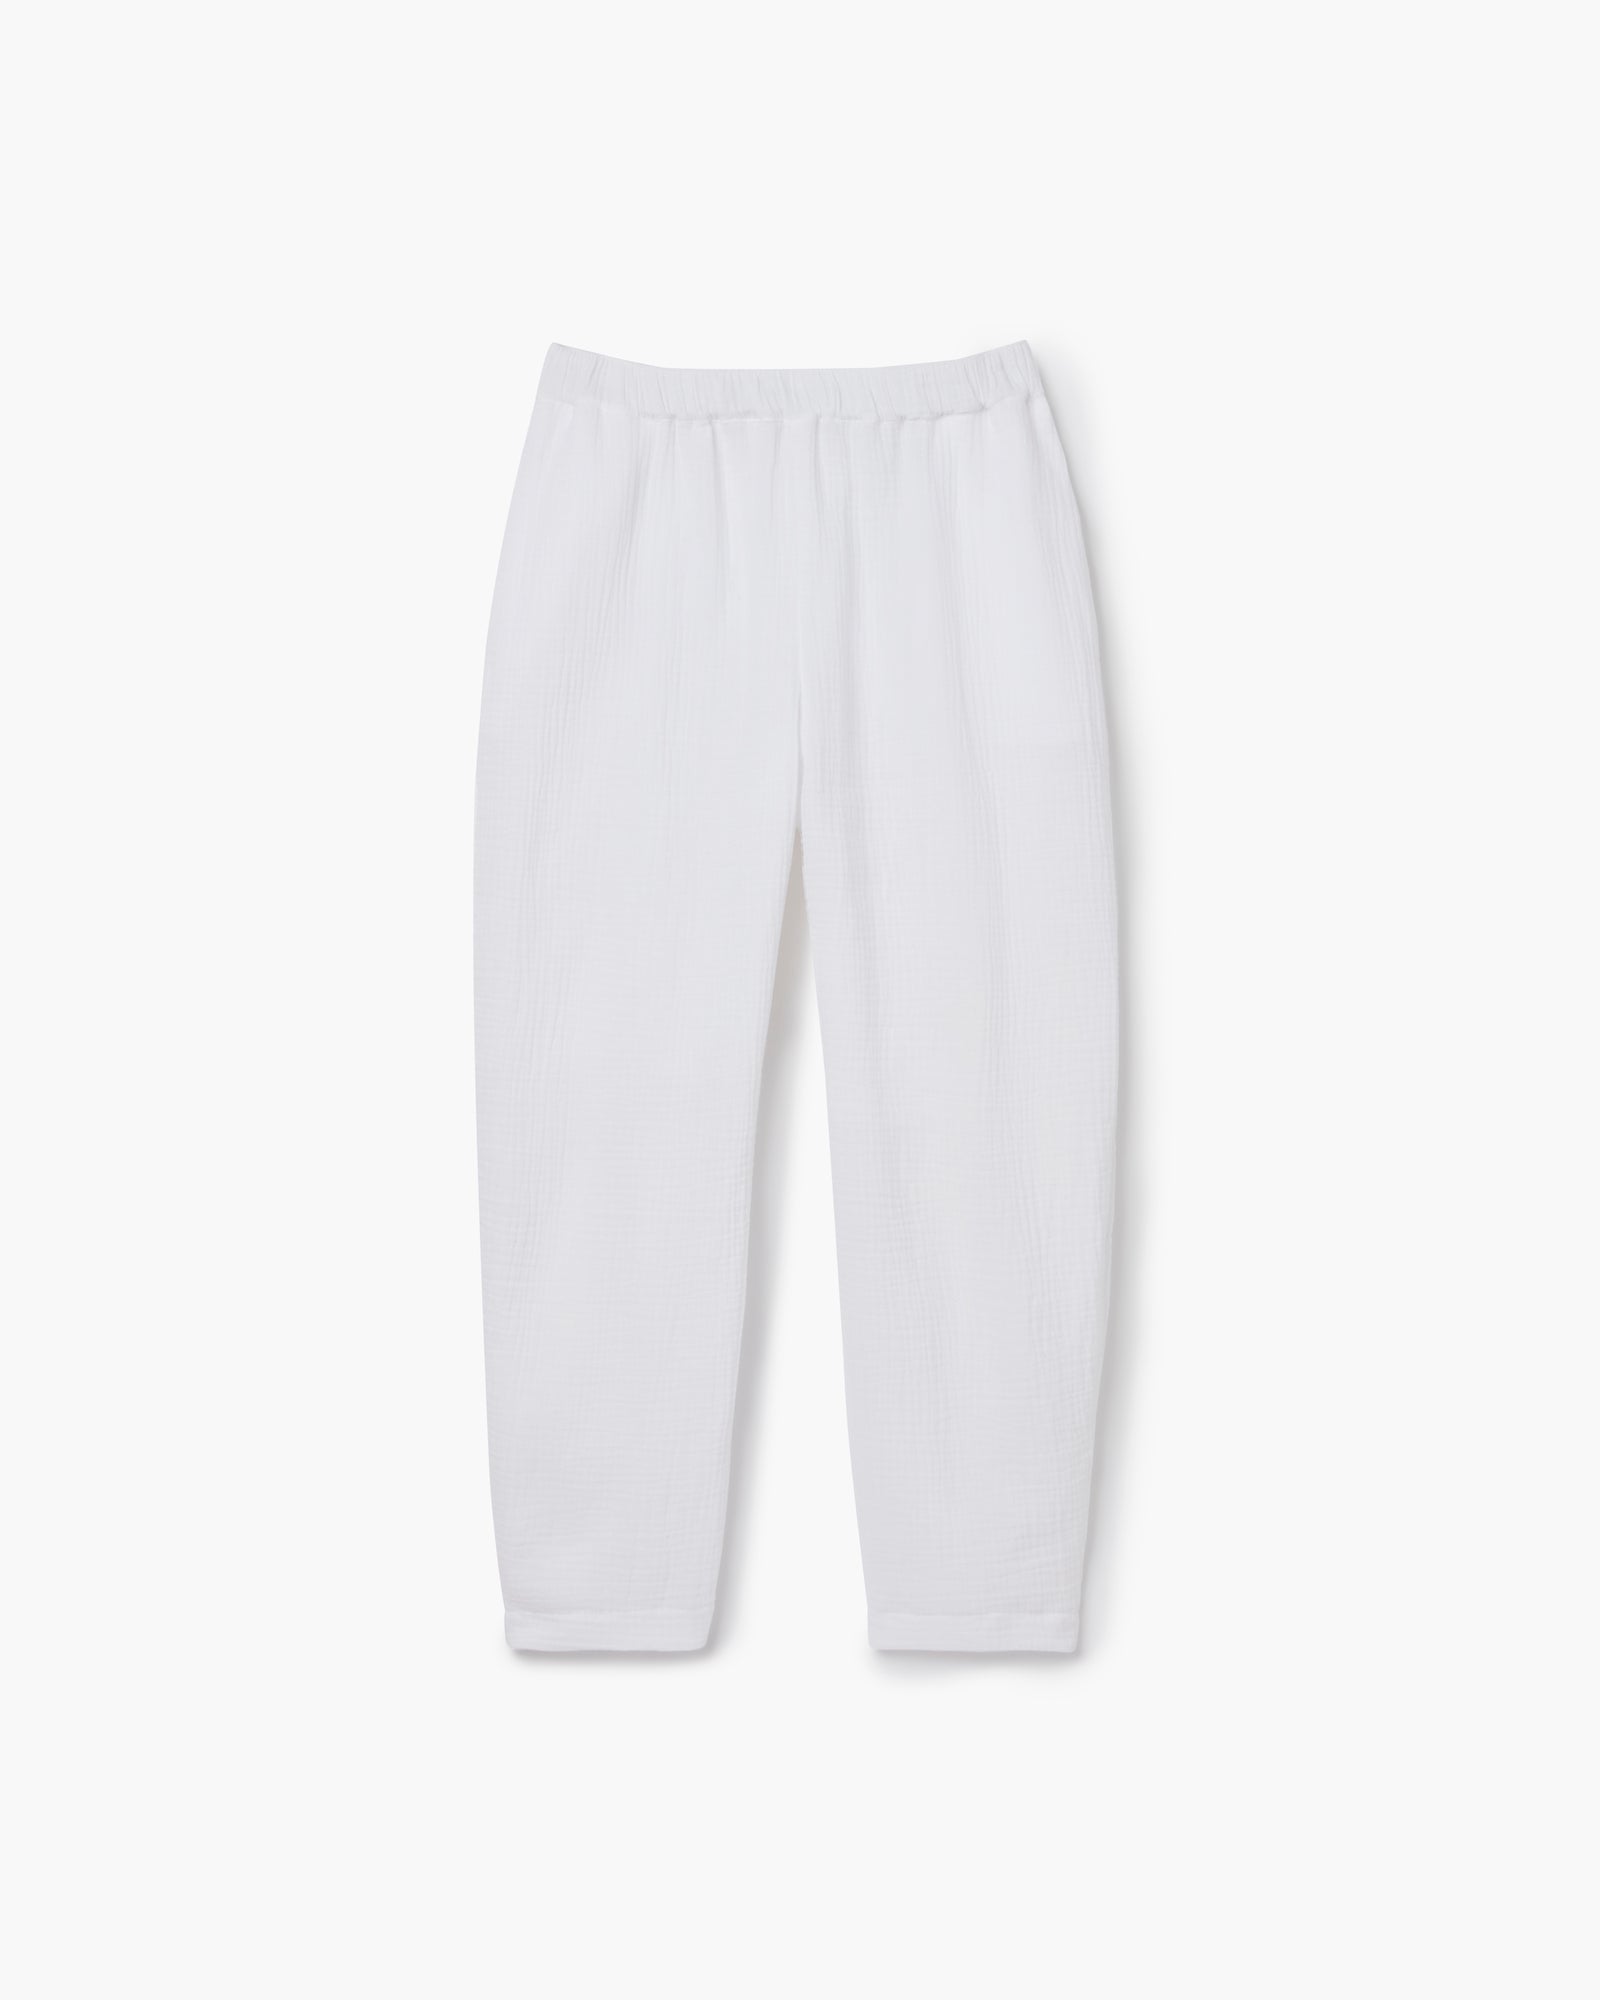 TKEES Gauze Women's Pants White | PKC258907